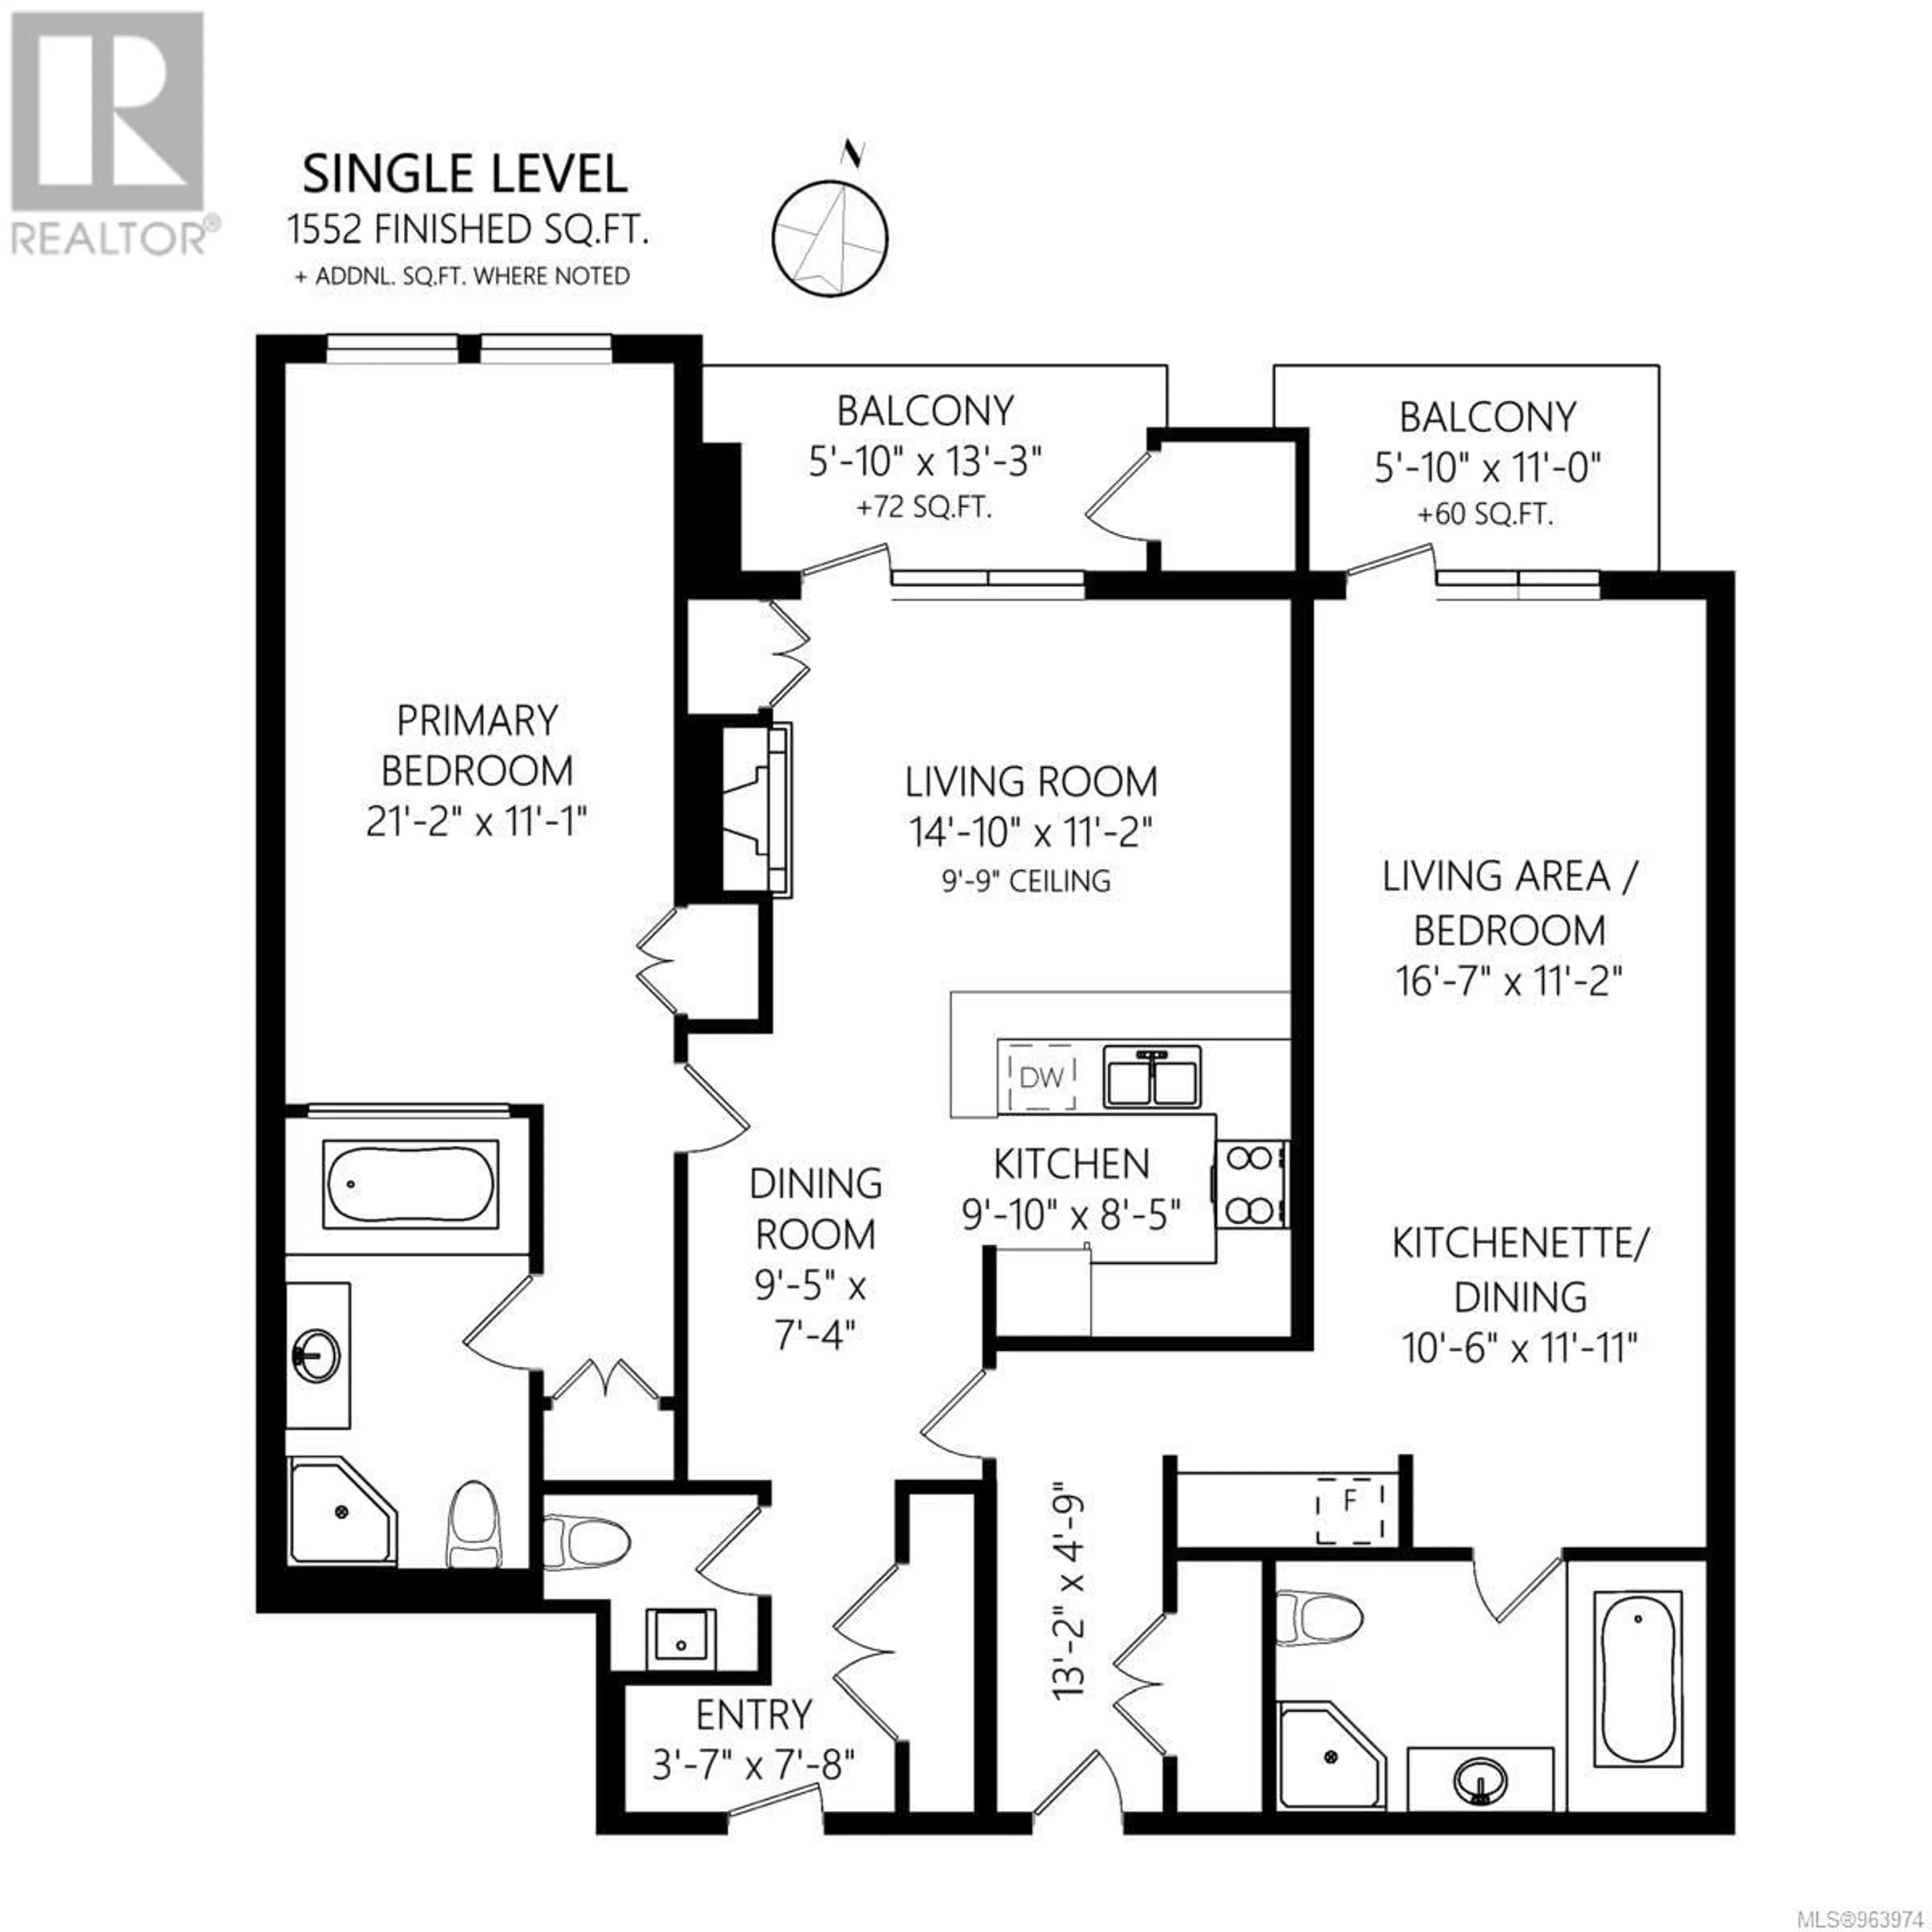 Floor plan for 306/308 C 1376 Lynburne Pl, Langford British Columbia V9B6S1